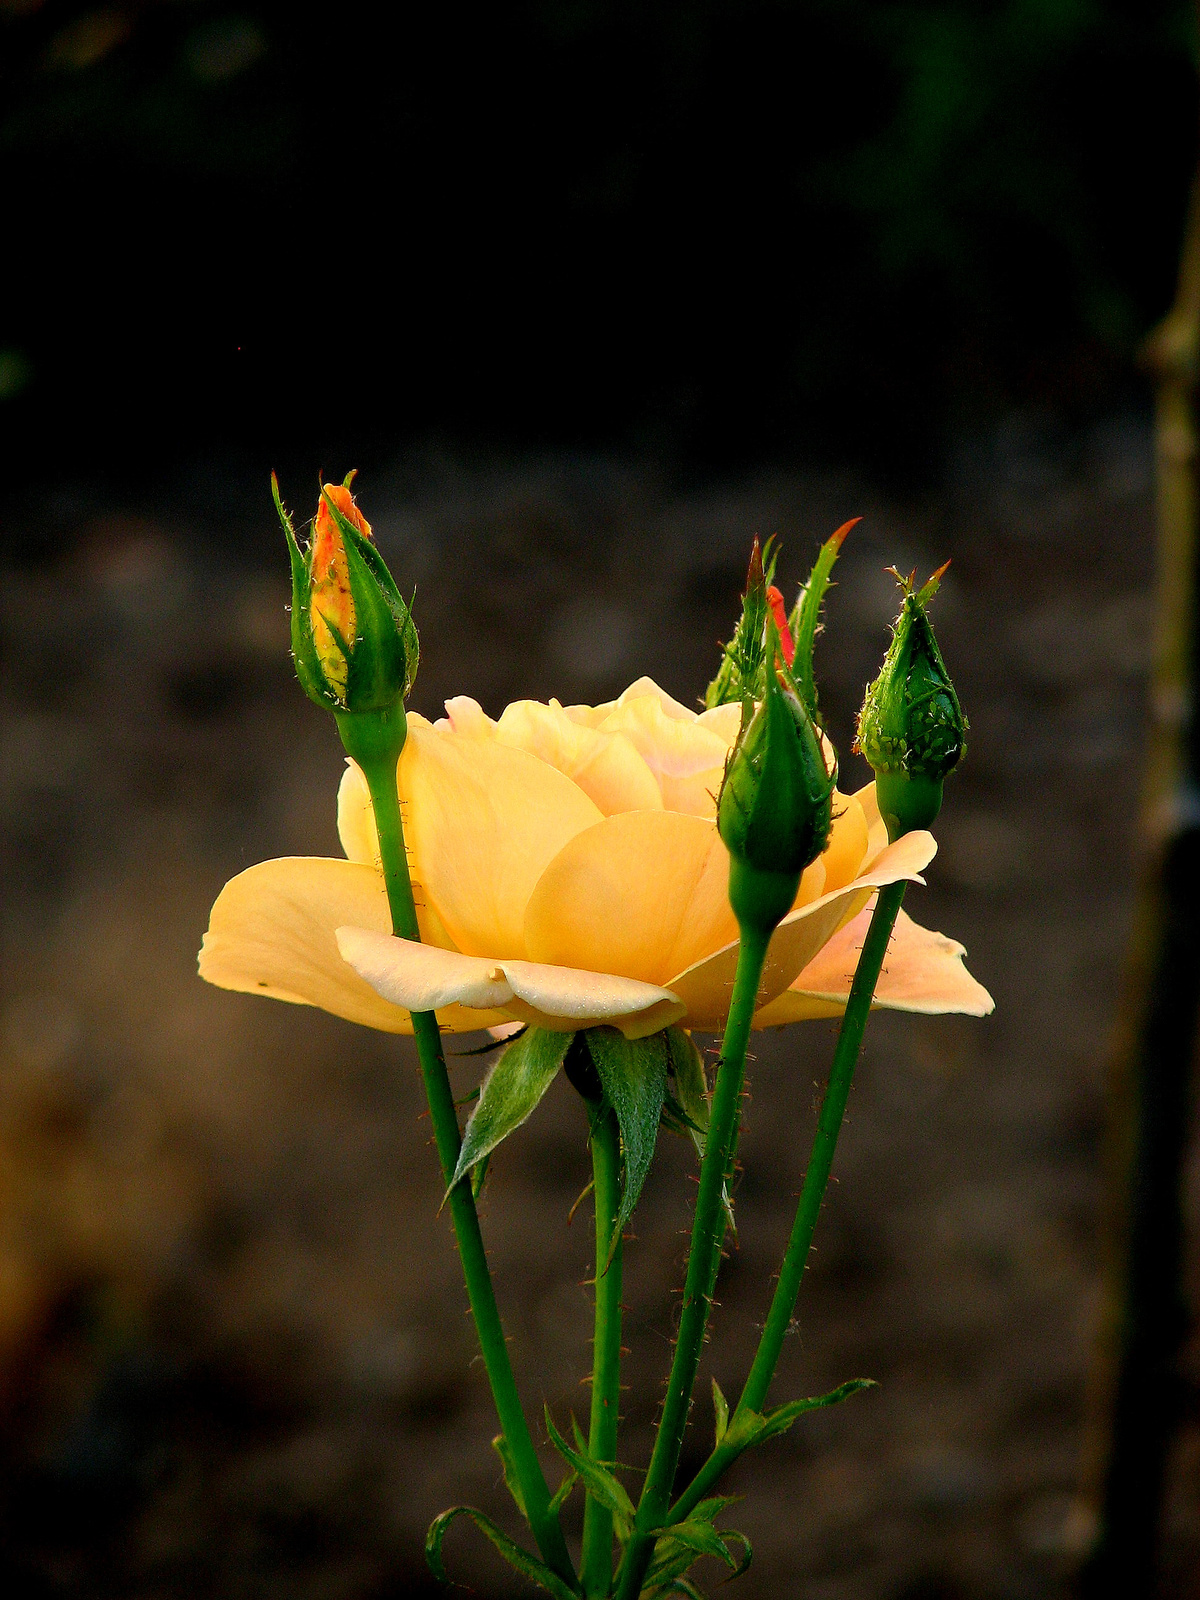 jún.28.rózsa sárgás bimbók közt-1